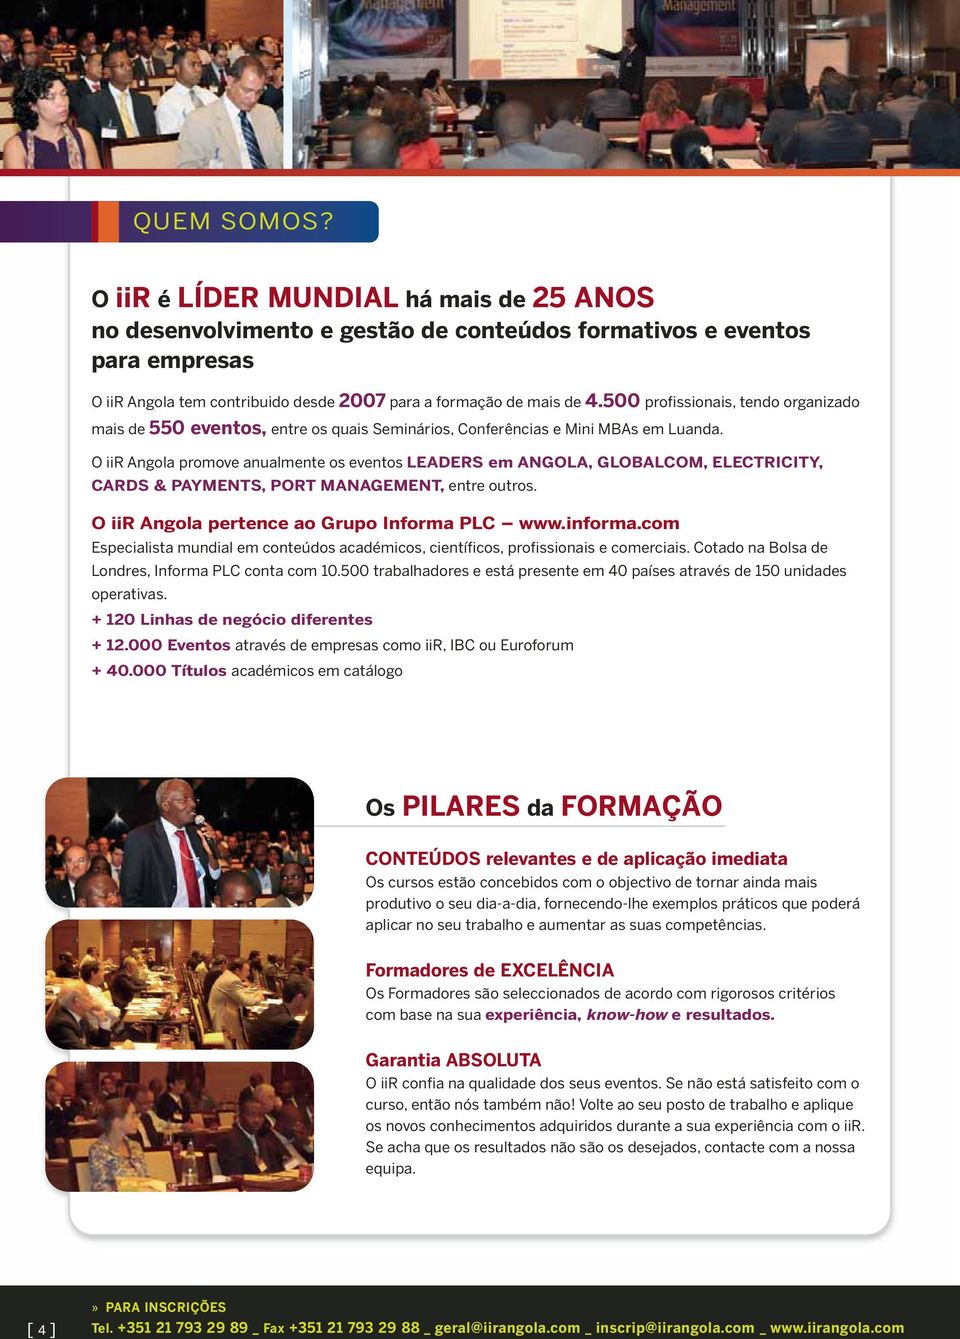 O iir Angola promove anualmente os eventos LEADERS em ANGOLA, GLOBALCOM, ELECTRICITY, CARDS & PAYMENTS, PORT MANAGEMENT, entre outros. O iir Angola pertence ao Grupo Informa PLC www.informa.